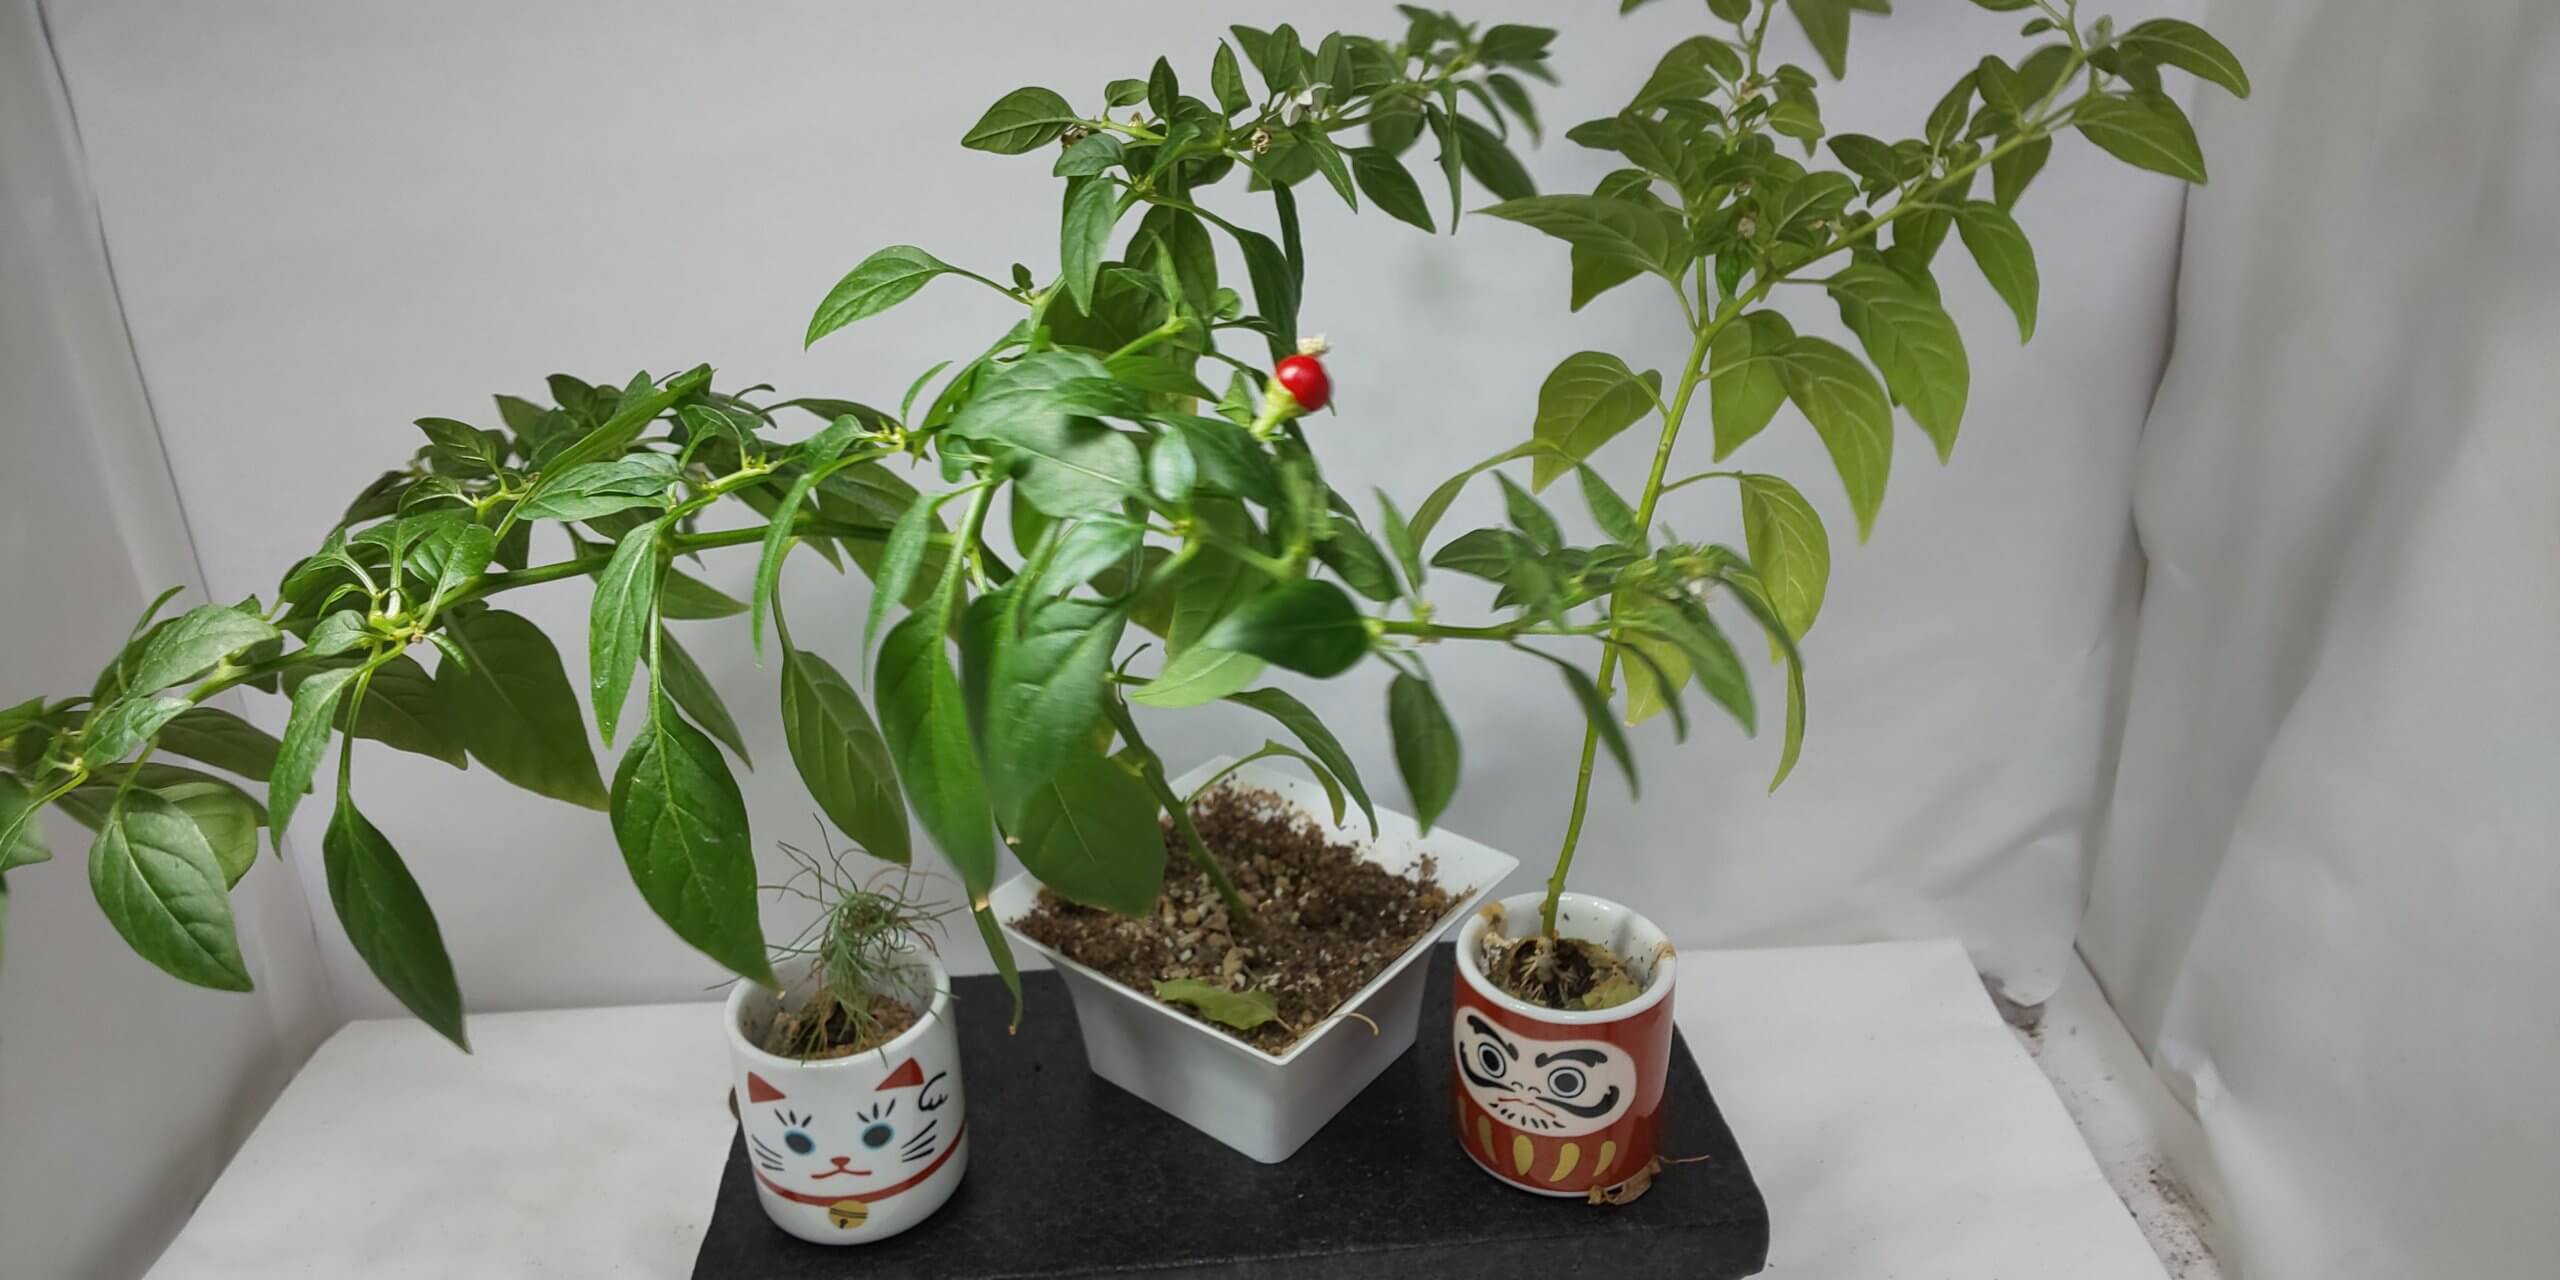 おちょこ 育てる 栽培キット だるま 五色トウガラシ 招き猫 赤松 レビュー 蜜柑の里情報板